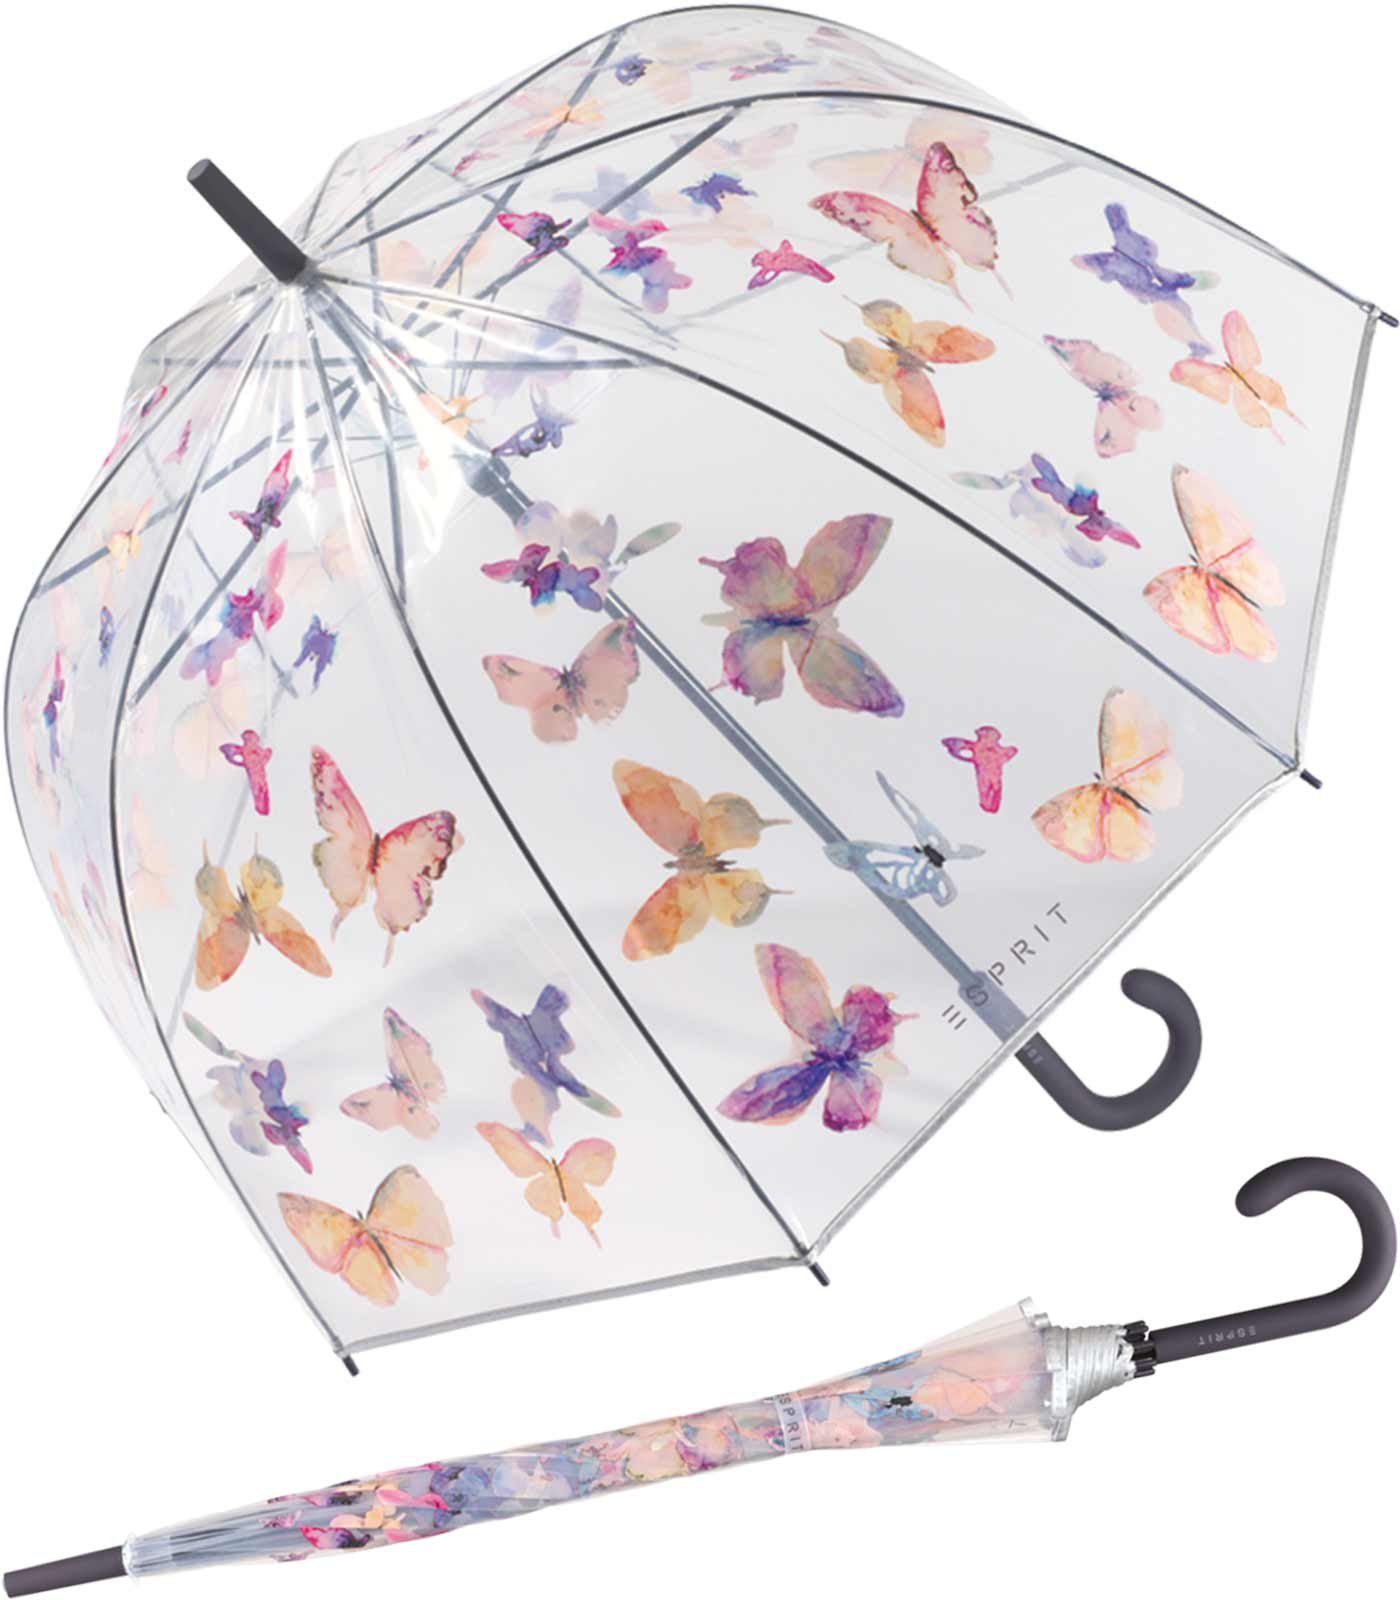 Langregenschirm transparent Butterfly Esprit mit Automatik Glockenschirm durchsichtig Dance,